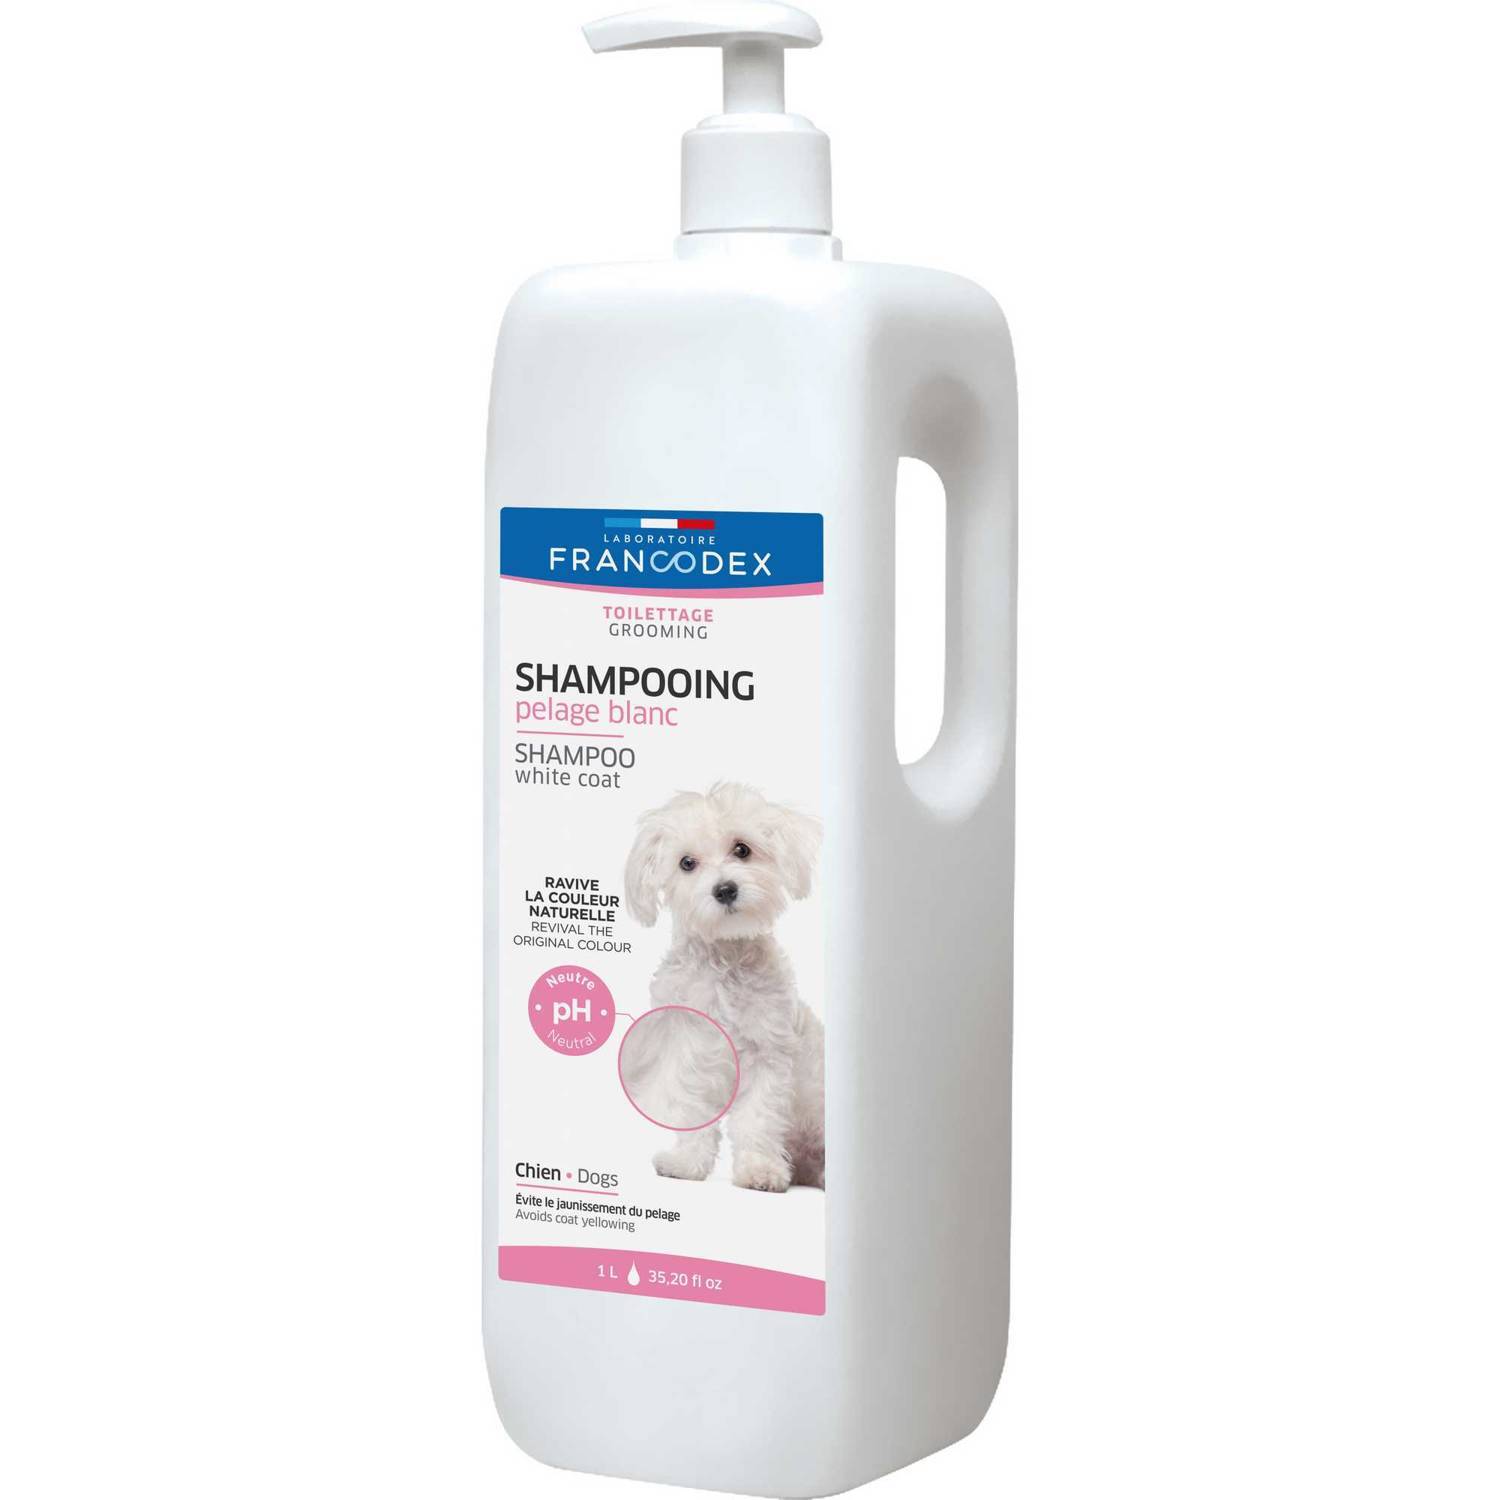 szampon dla psa do białej sierści